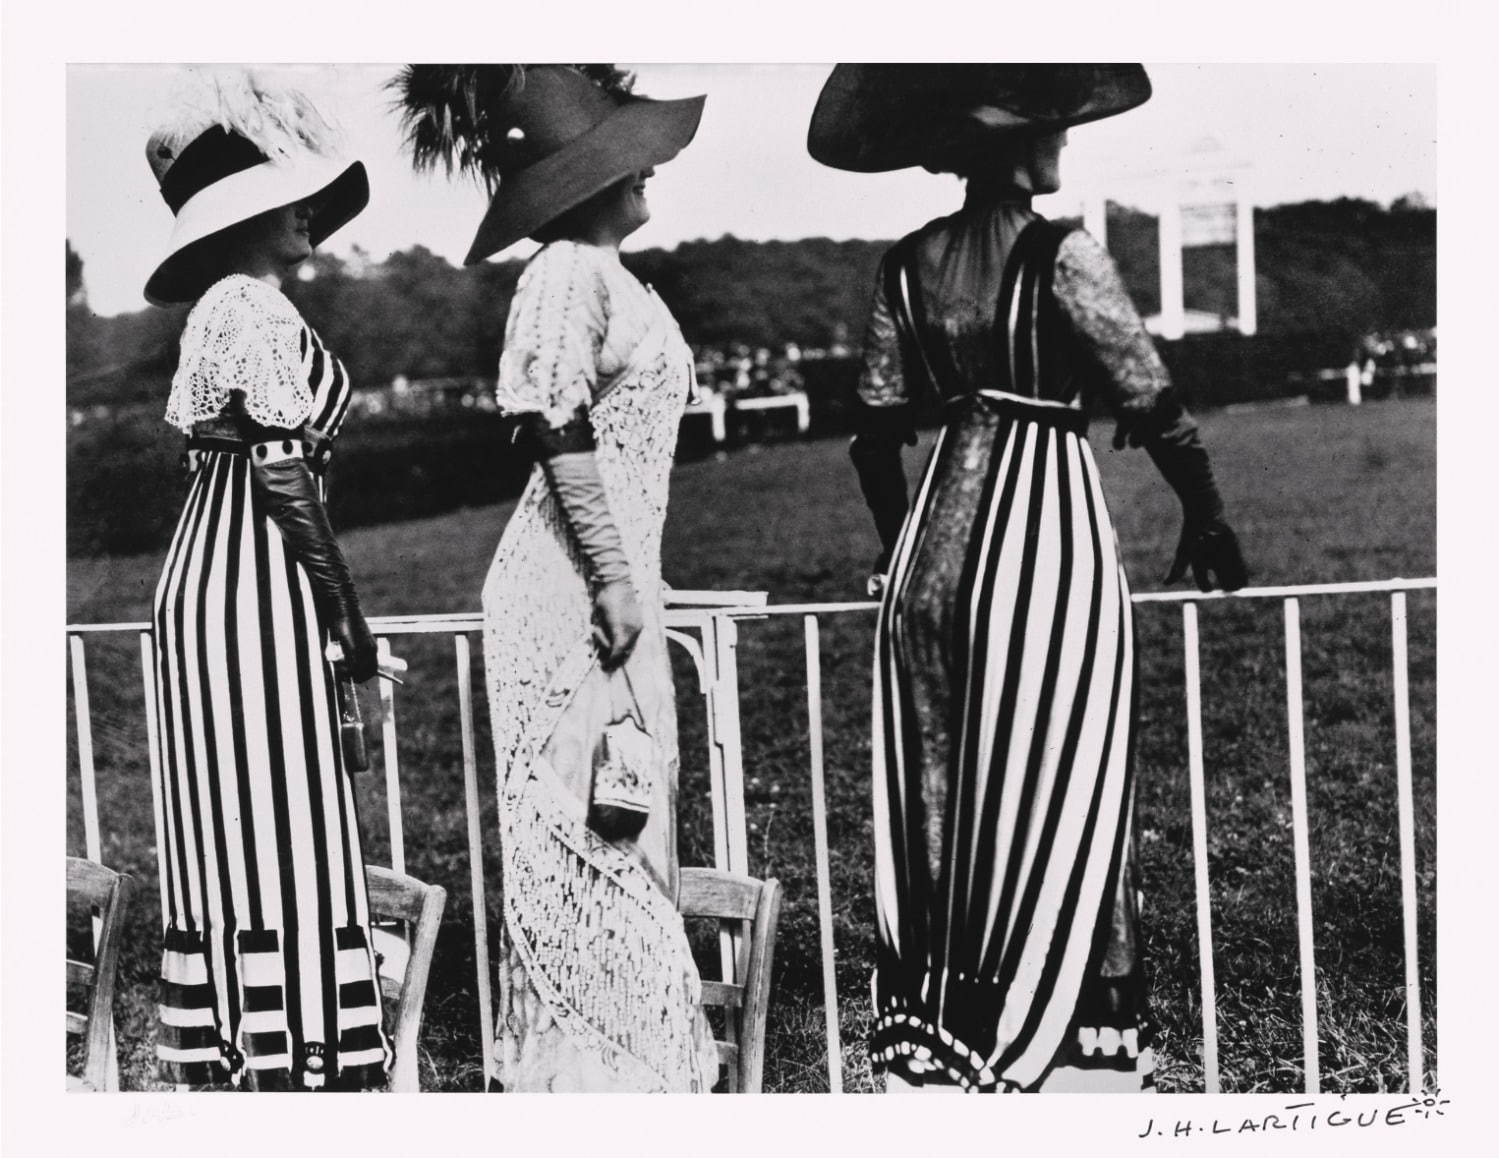 《ドラッグ競馬会の日、 オートゥイユ競馬場》
ジャック＝アンリ・ラルティーグ 1911年